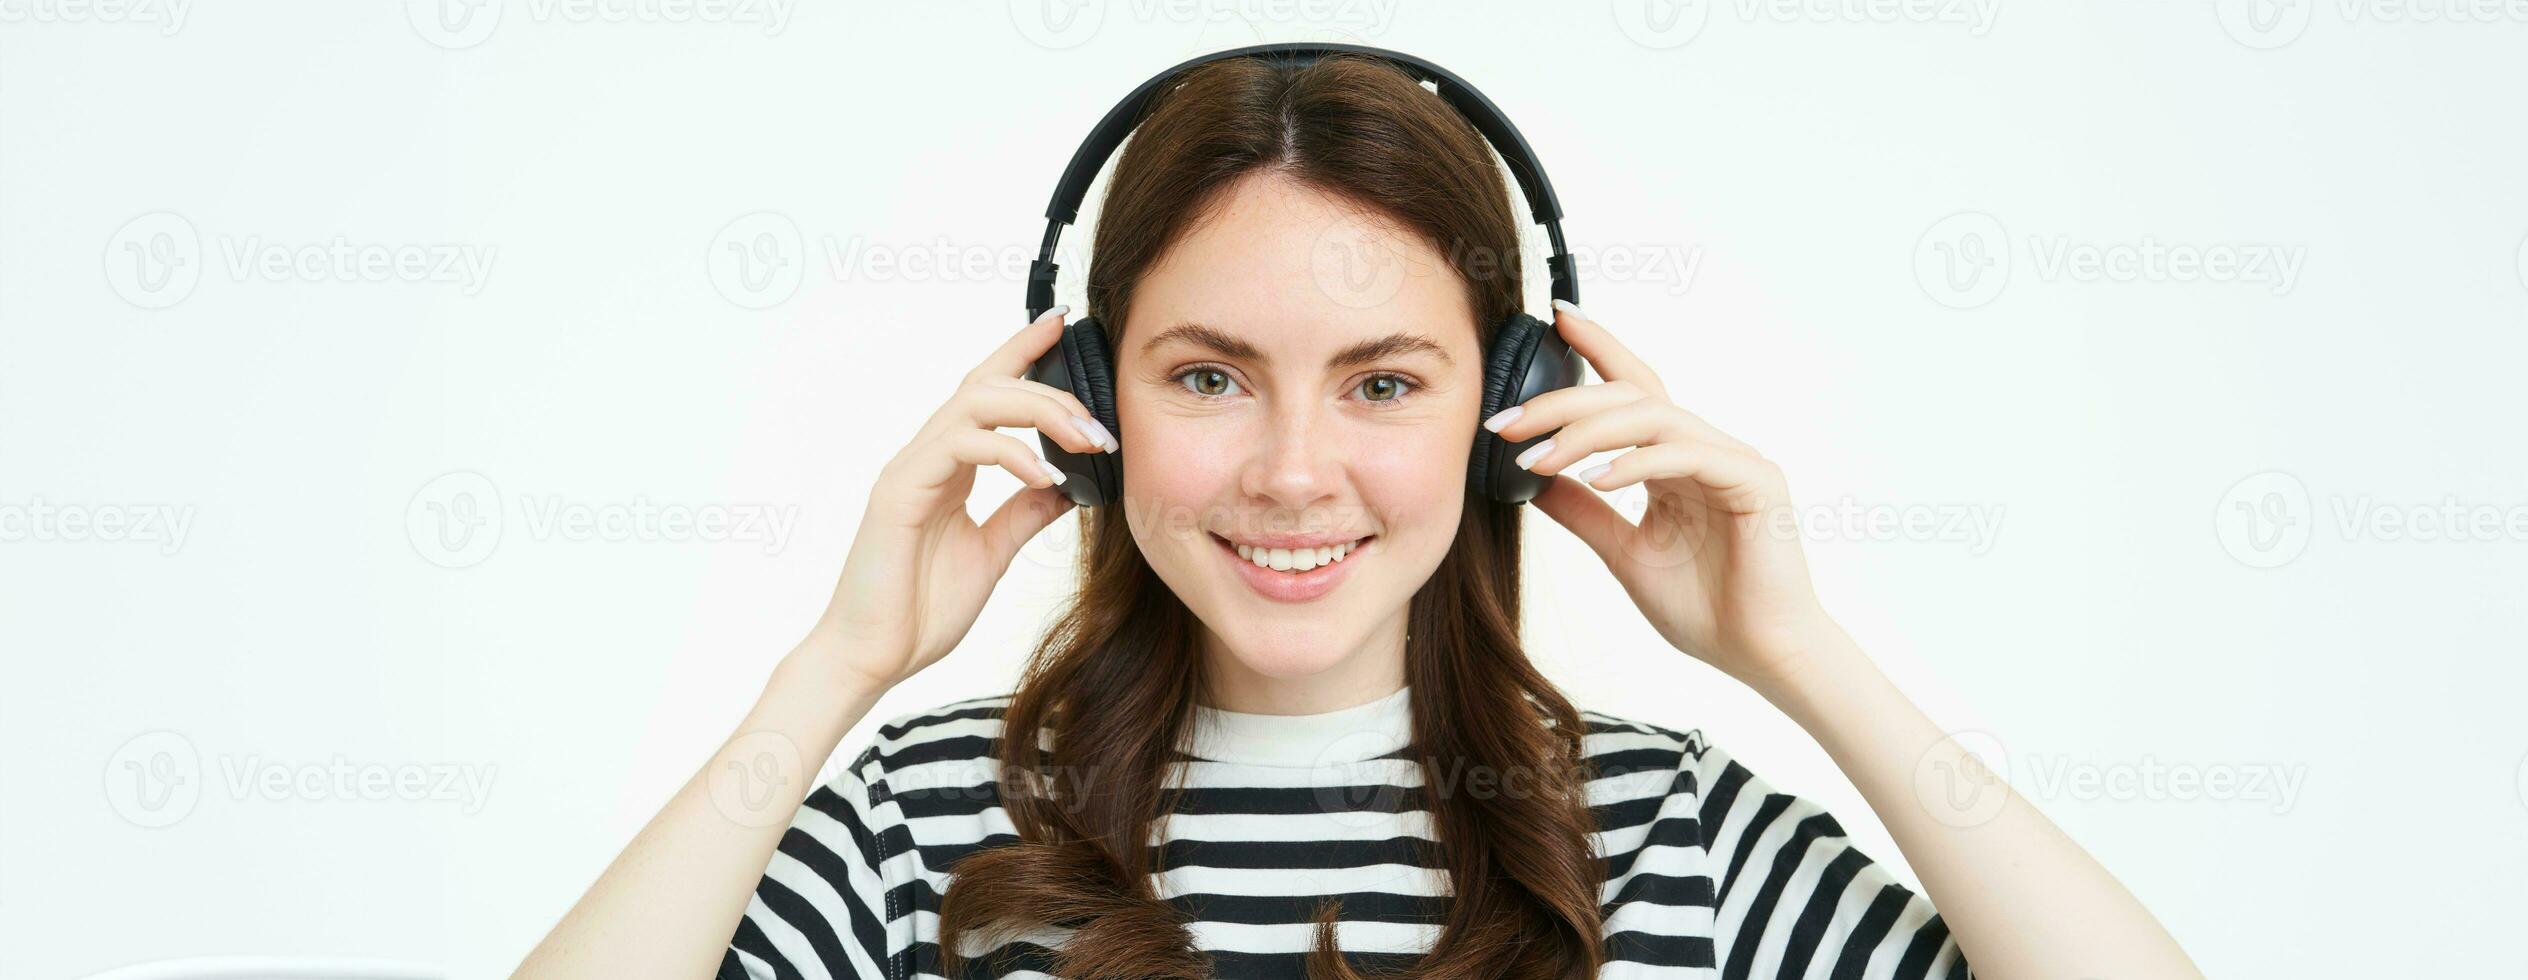 portret van vrouw, lachend, vervelend draadloze koptelefoon, luisteren muziek, aan het studeren in oortelefoons, staand geïsoleerd over- wit achtergrond foto